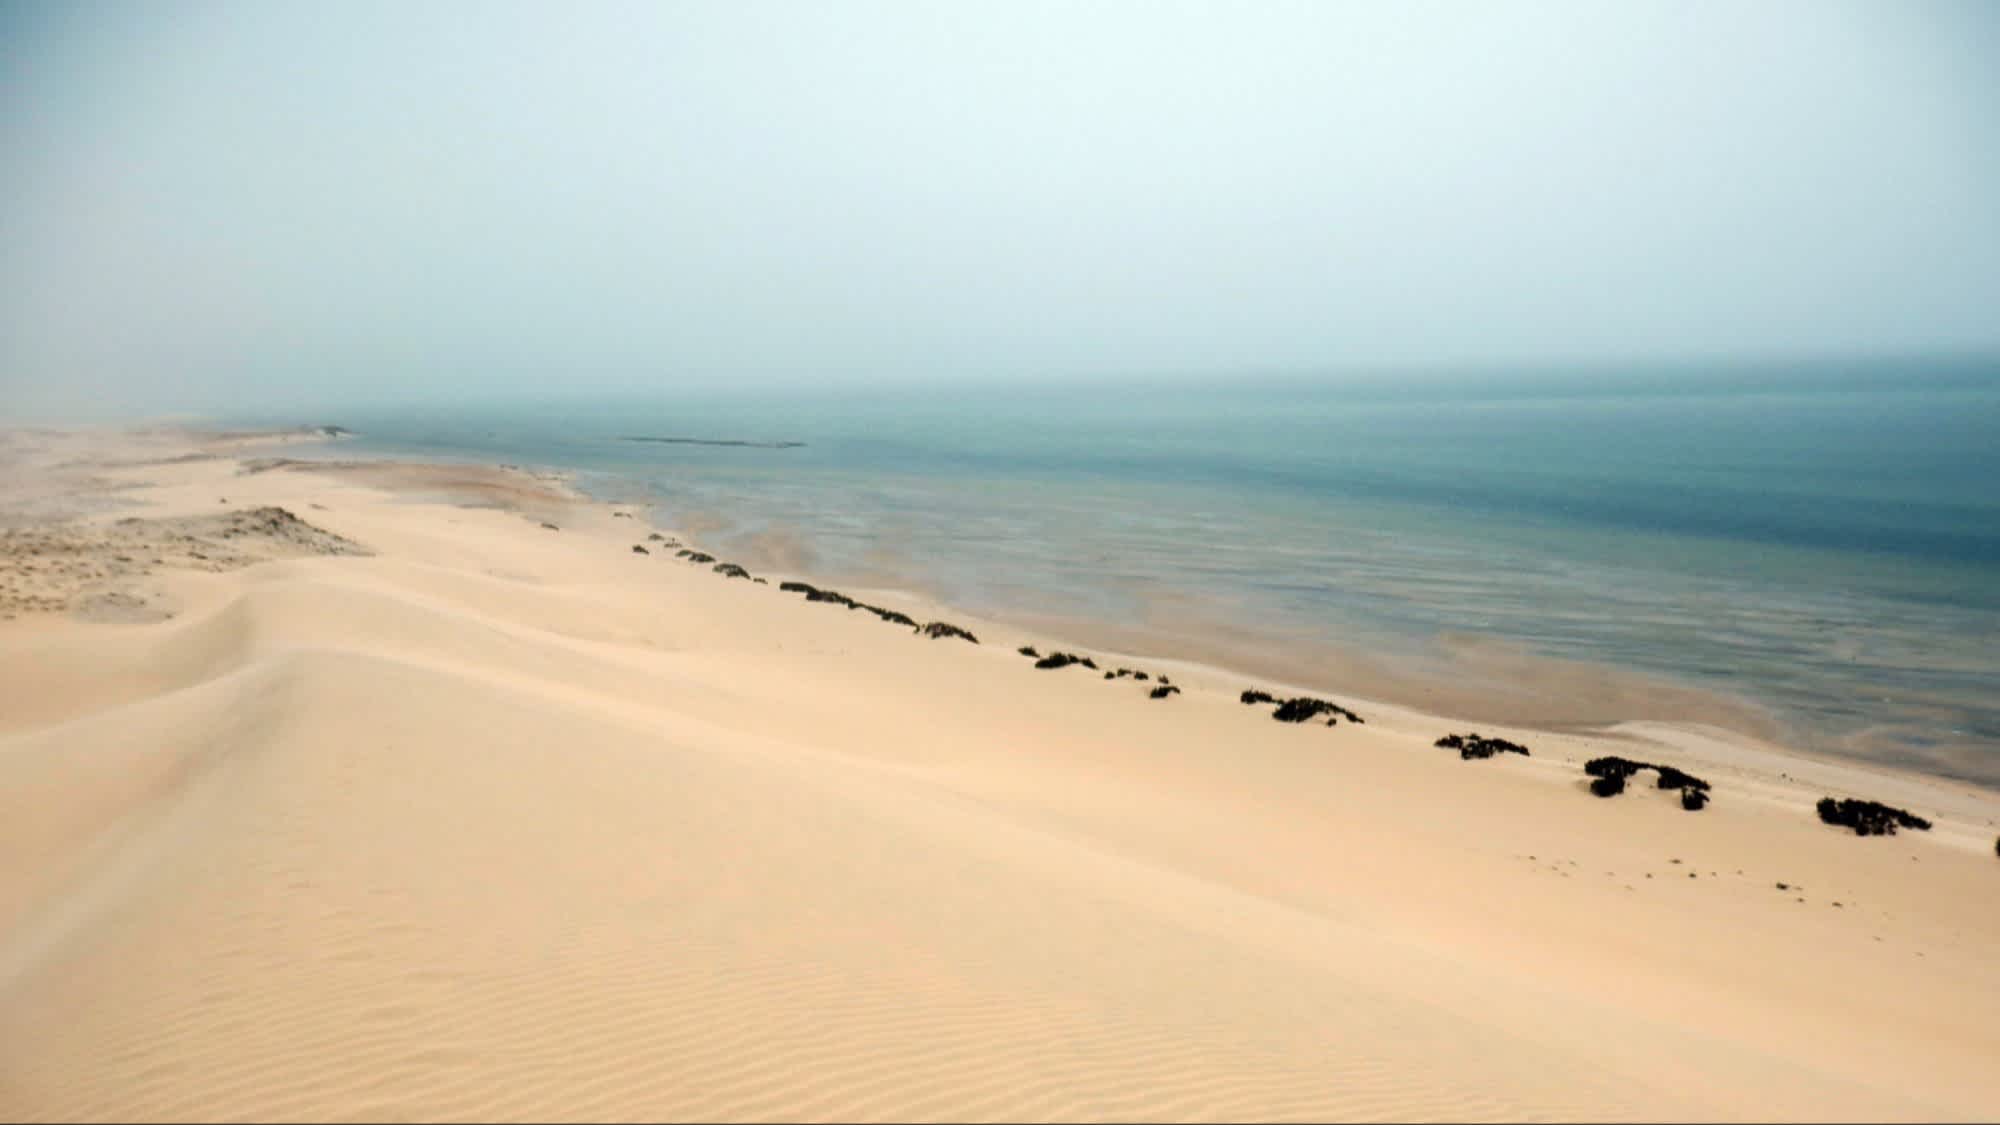 Dunes de sable près de Dakhla au Sahara occidental, Morocco

